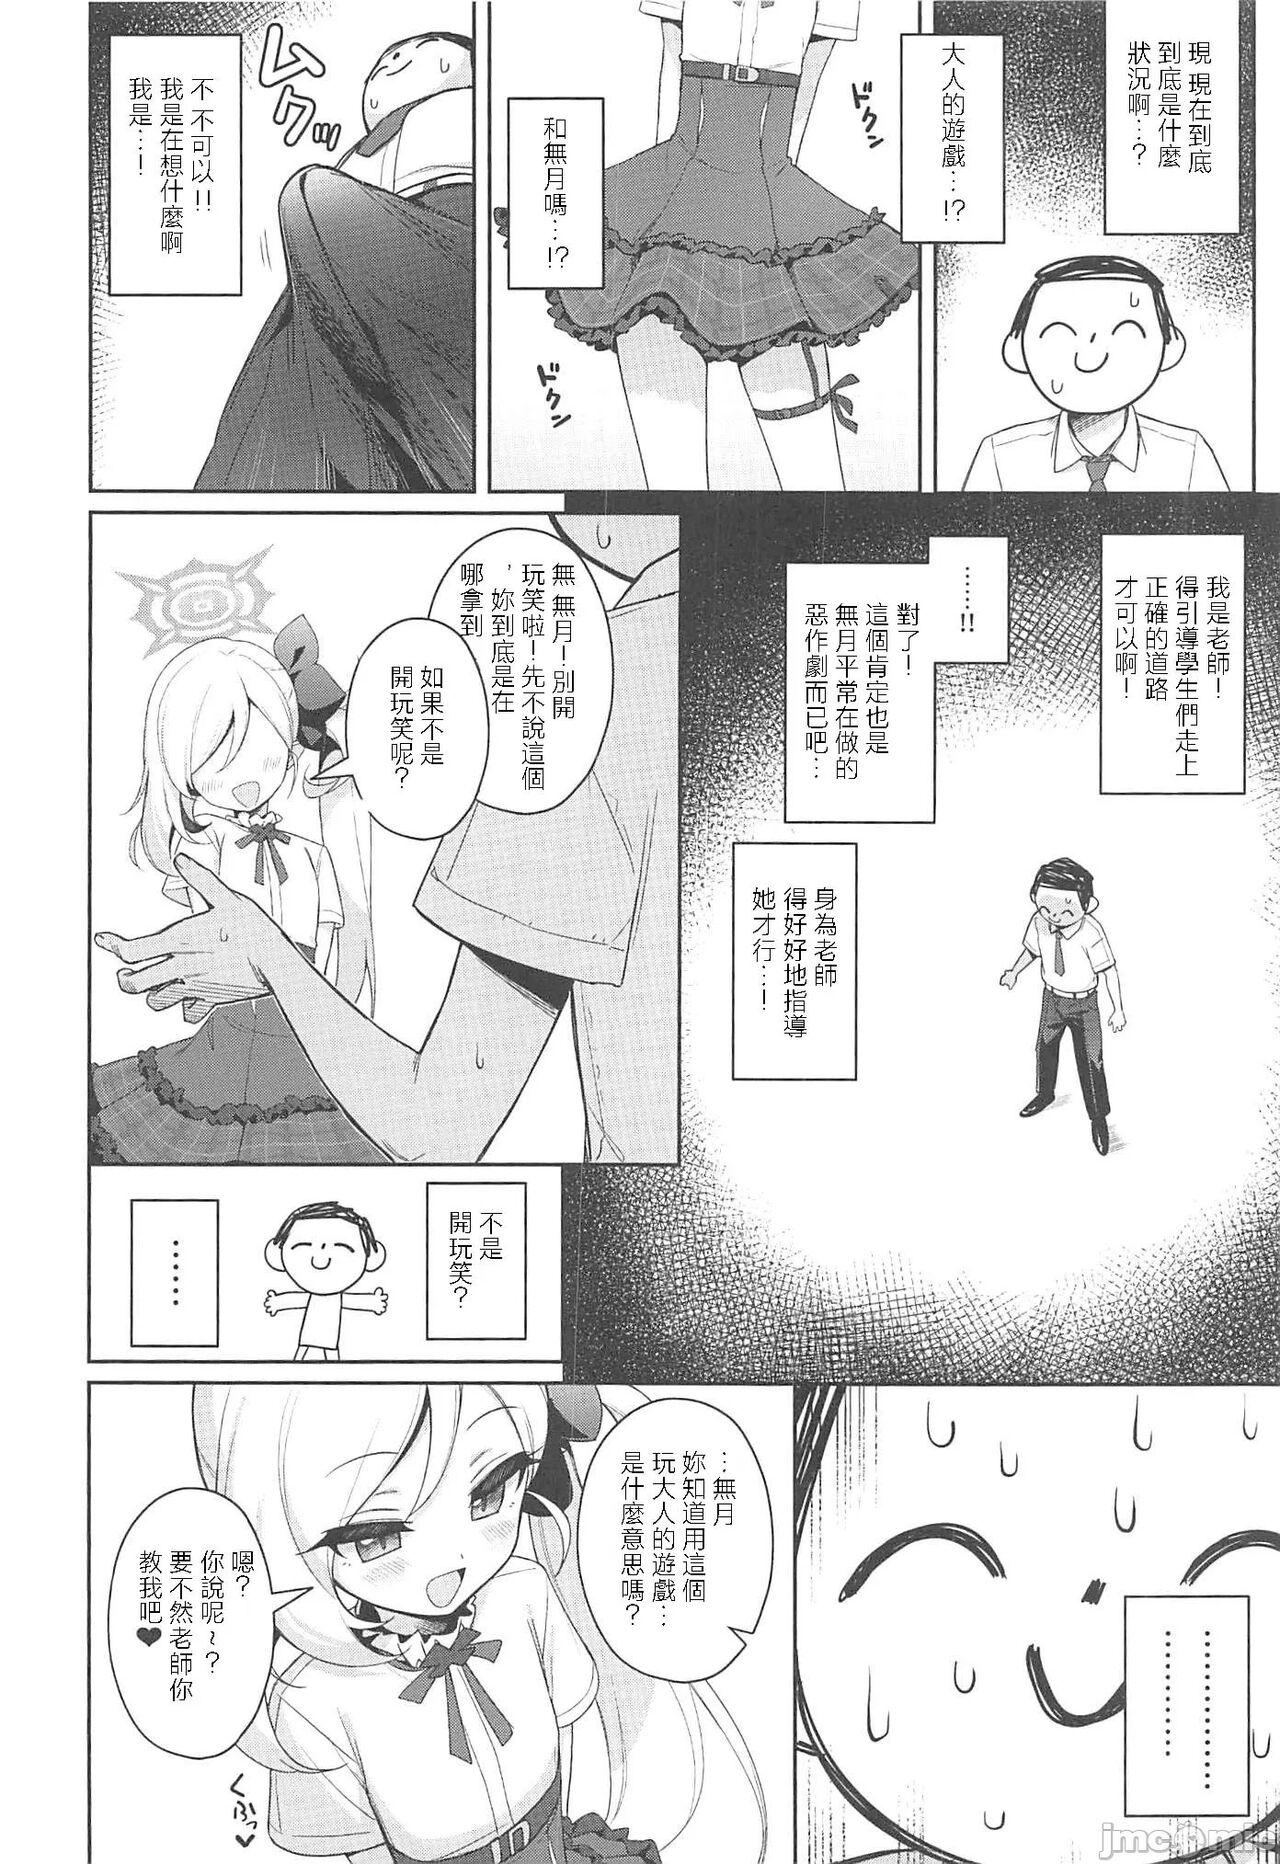 Chilena Mutsuki wa Otona no Asobi ga Shitai - Blue archive Abuse - Page 7